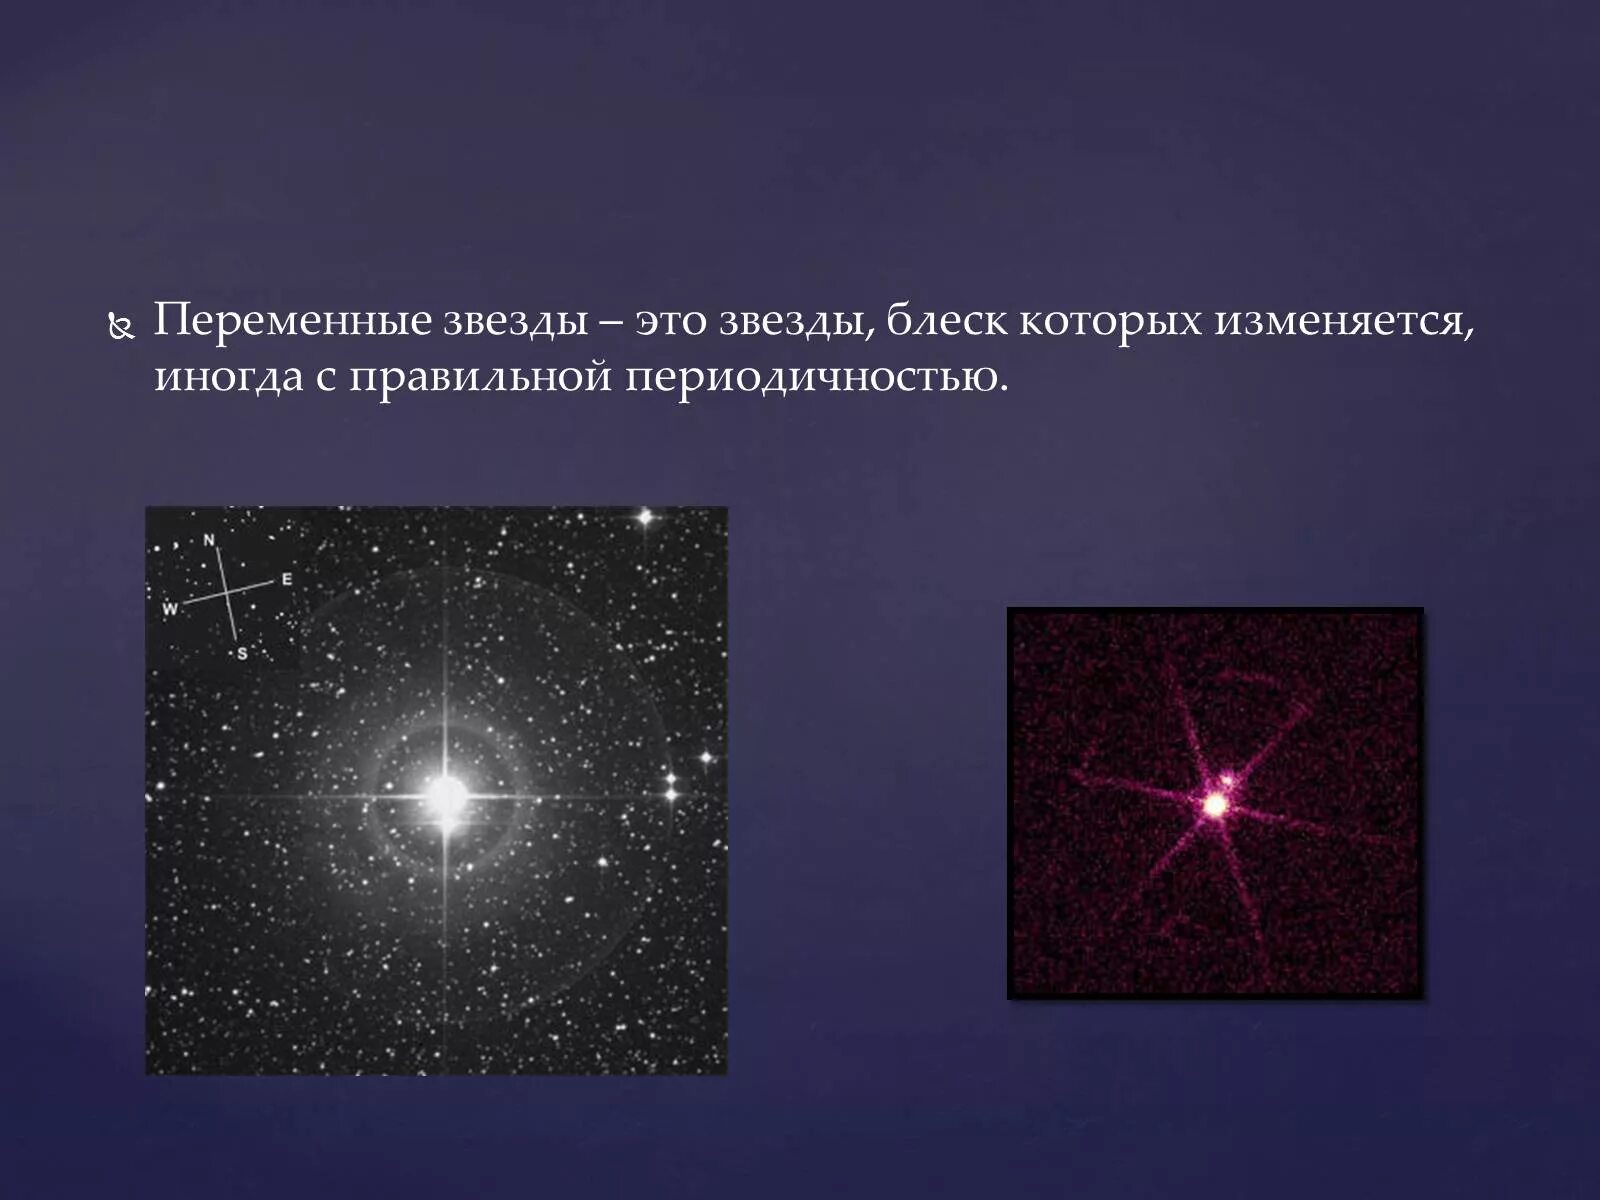 Изменение блеска переменных звезд